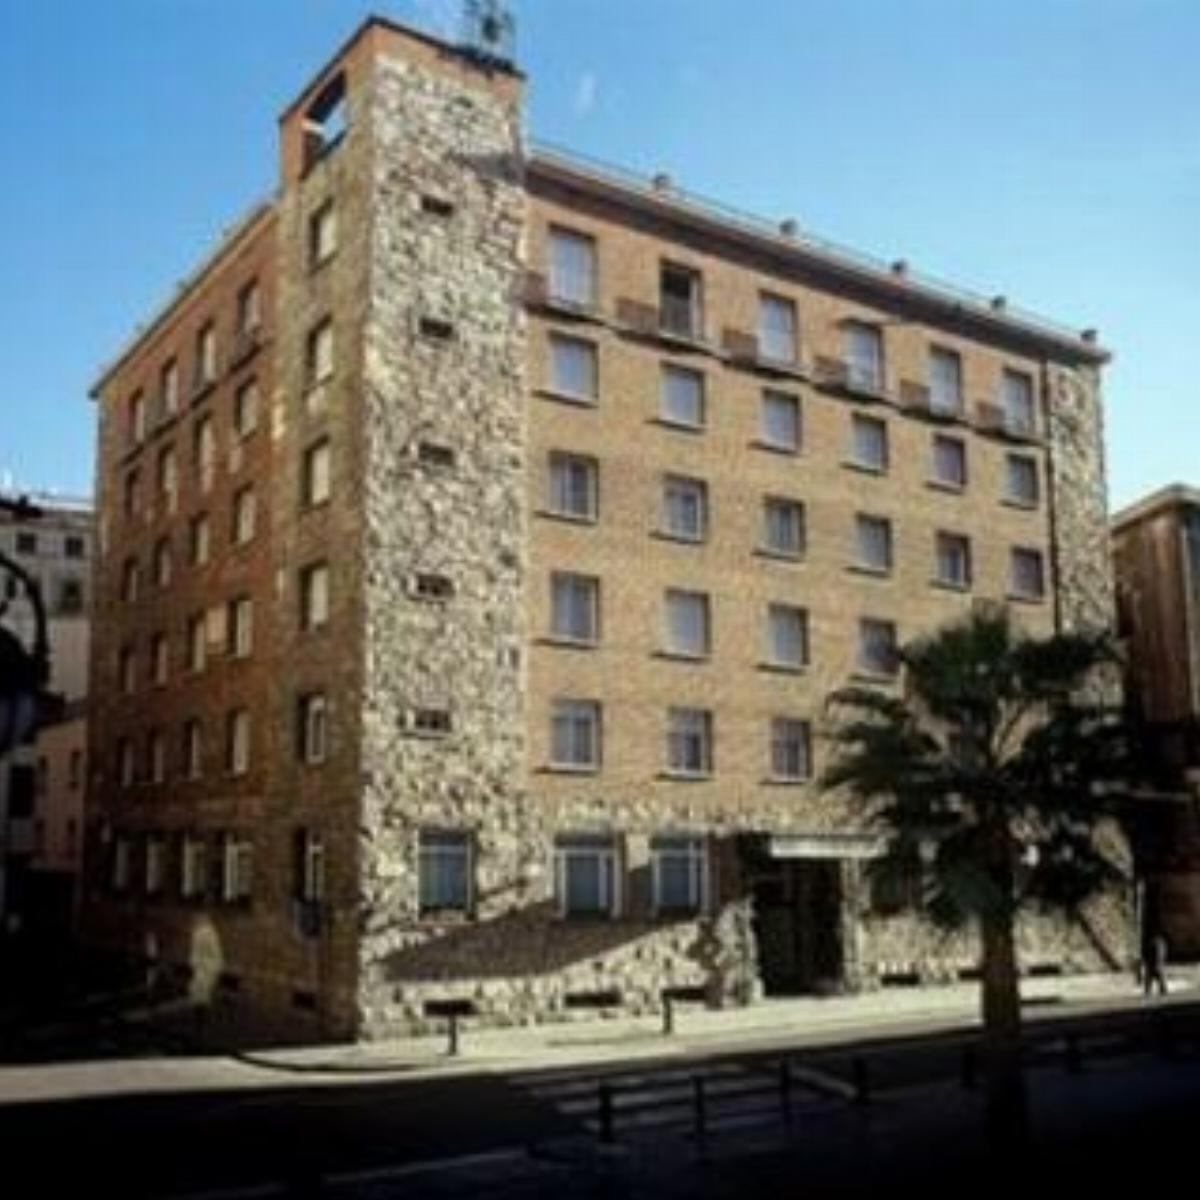 Regencia Colón Hotel Barcelona Spain